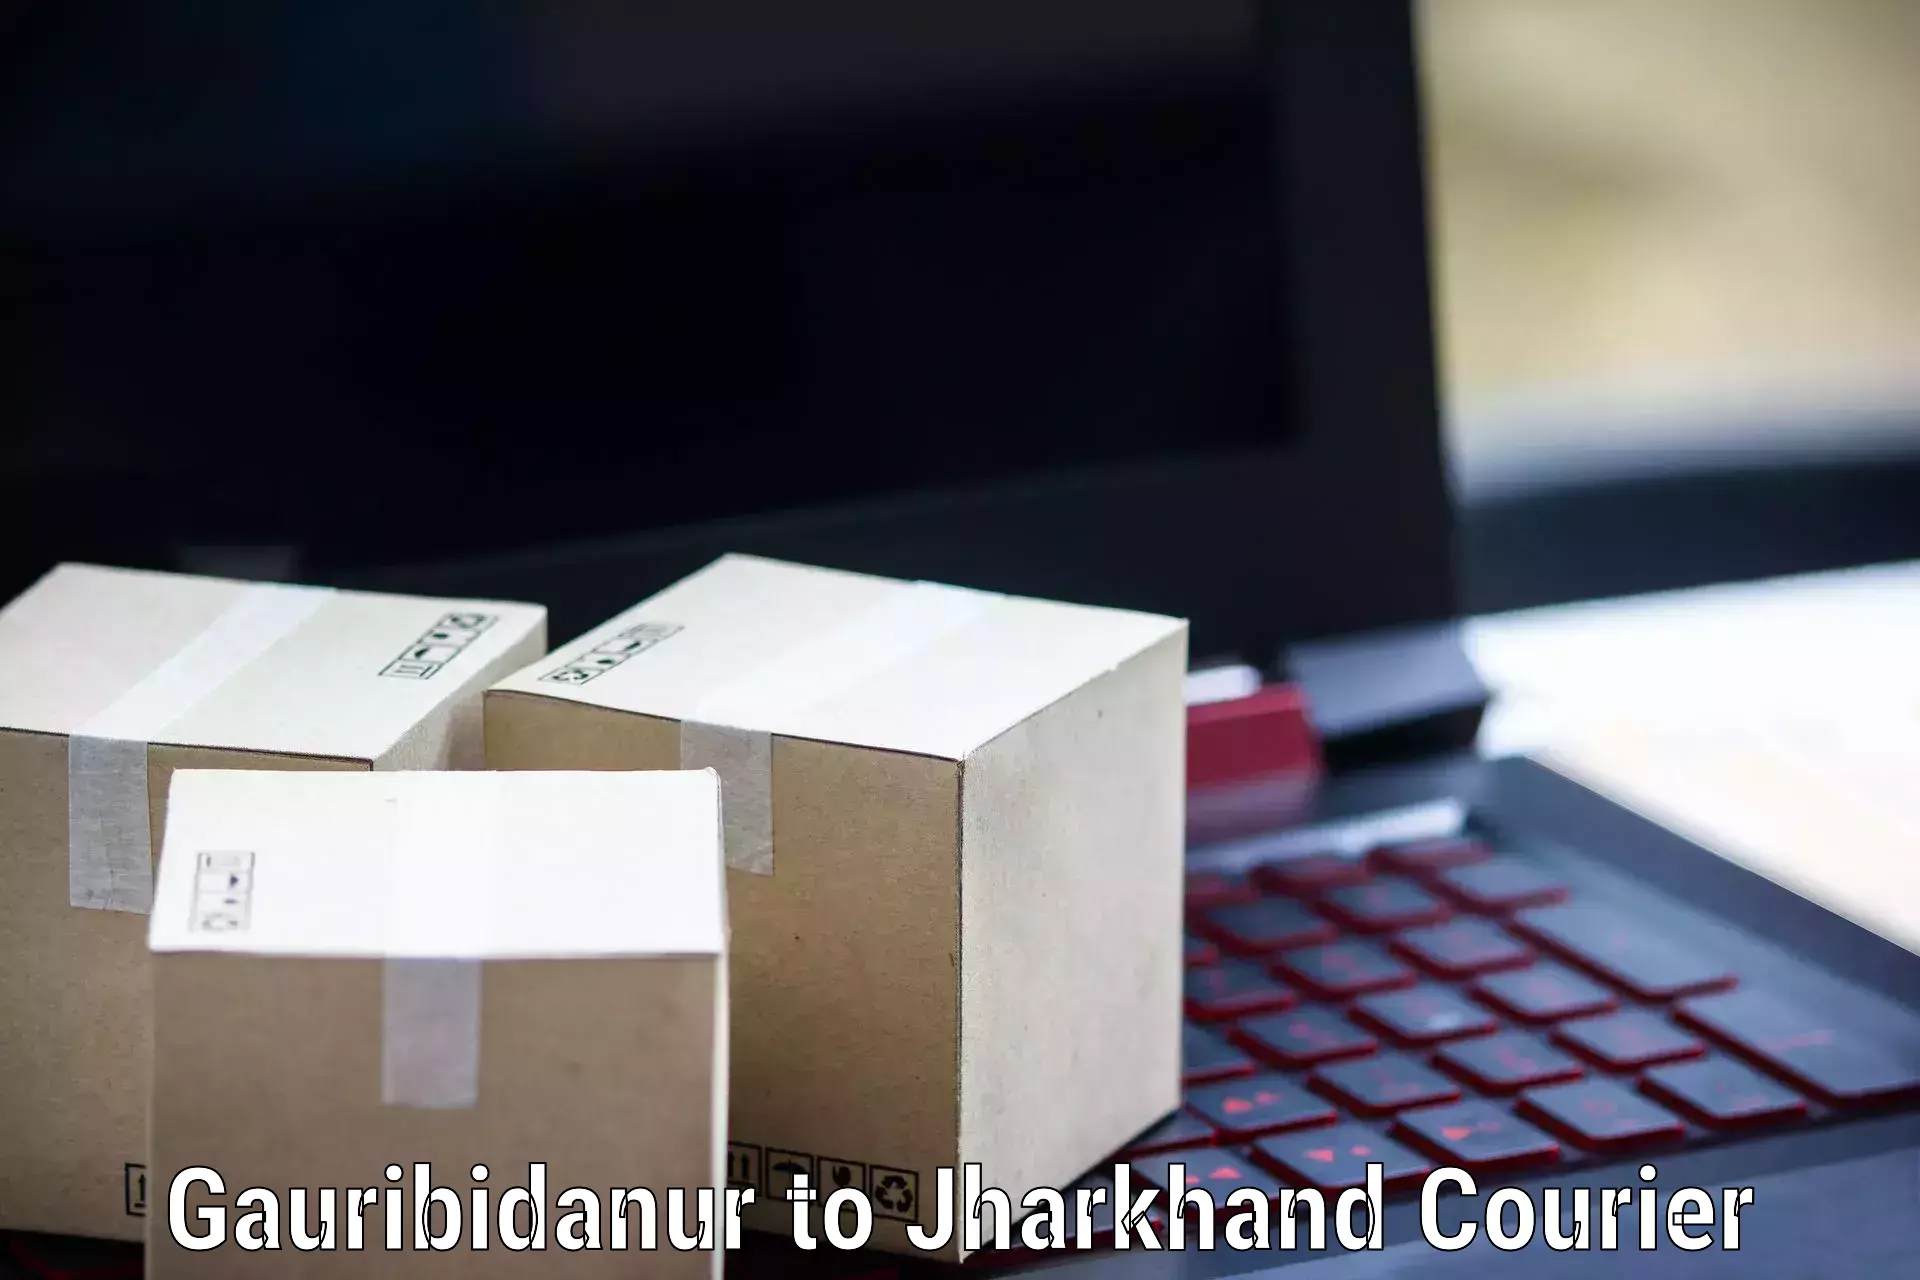 Next-generation courier services Gauribidanur to Koderma